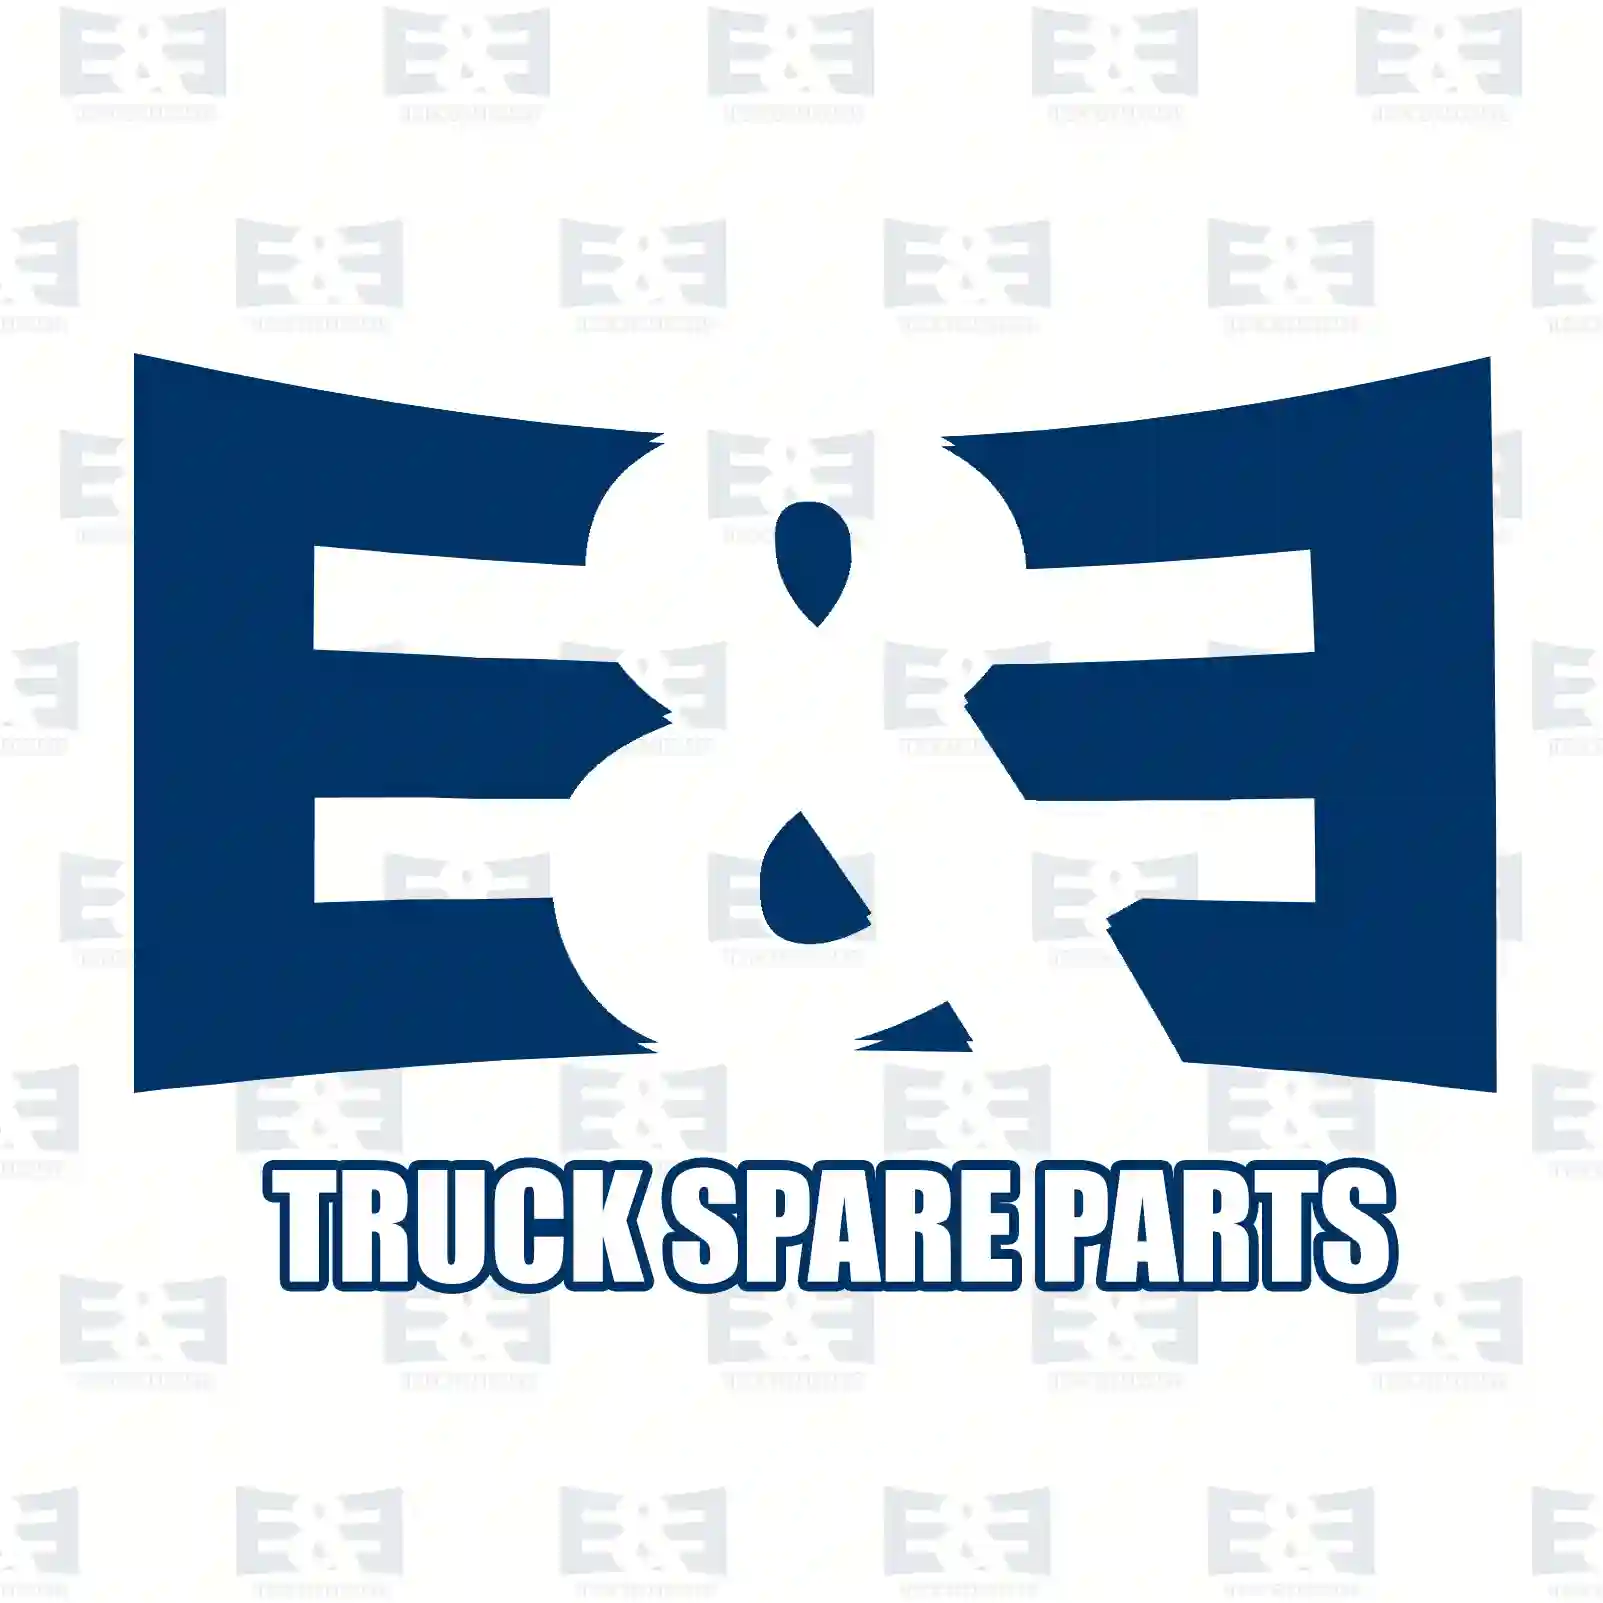 Spring bracket, 2E2283299, 3953251019, 6243250219, ||  2E2283299 E&E Truck Spare Parts | Truck Spare Parts, Auotomotive Spare Parts Spring bracket, 2E2283299, 3953251019, 6243250219, ||  2E2283299 E&E Truck Spare Parts | Truck Spare Parts, Auotomotive Spare Parts